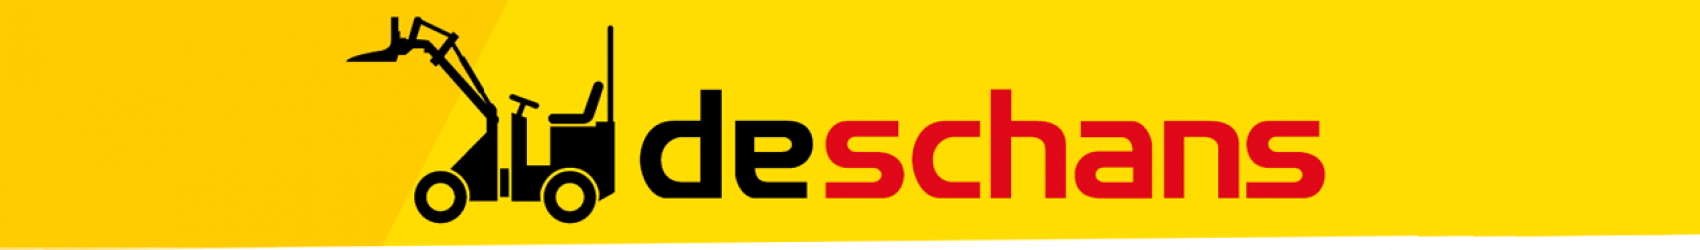 De Schans - logo